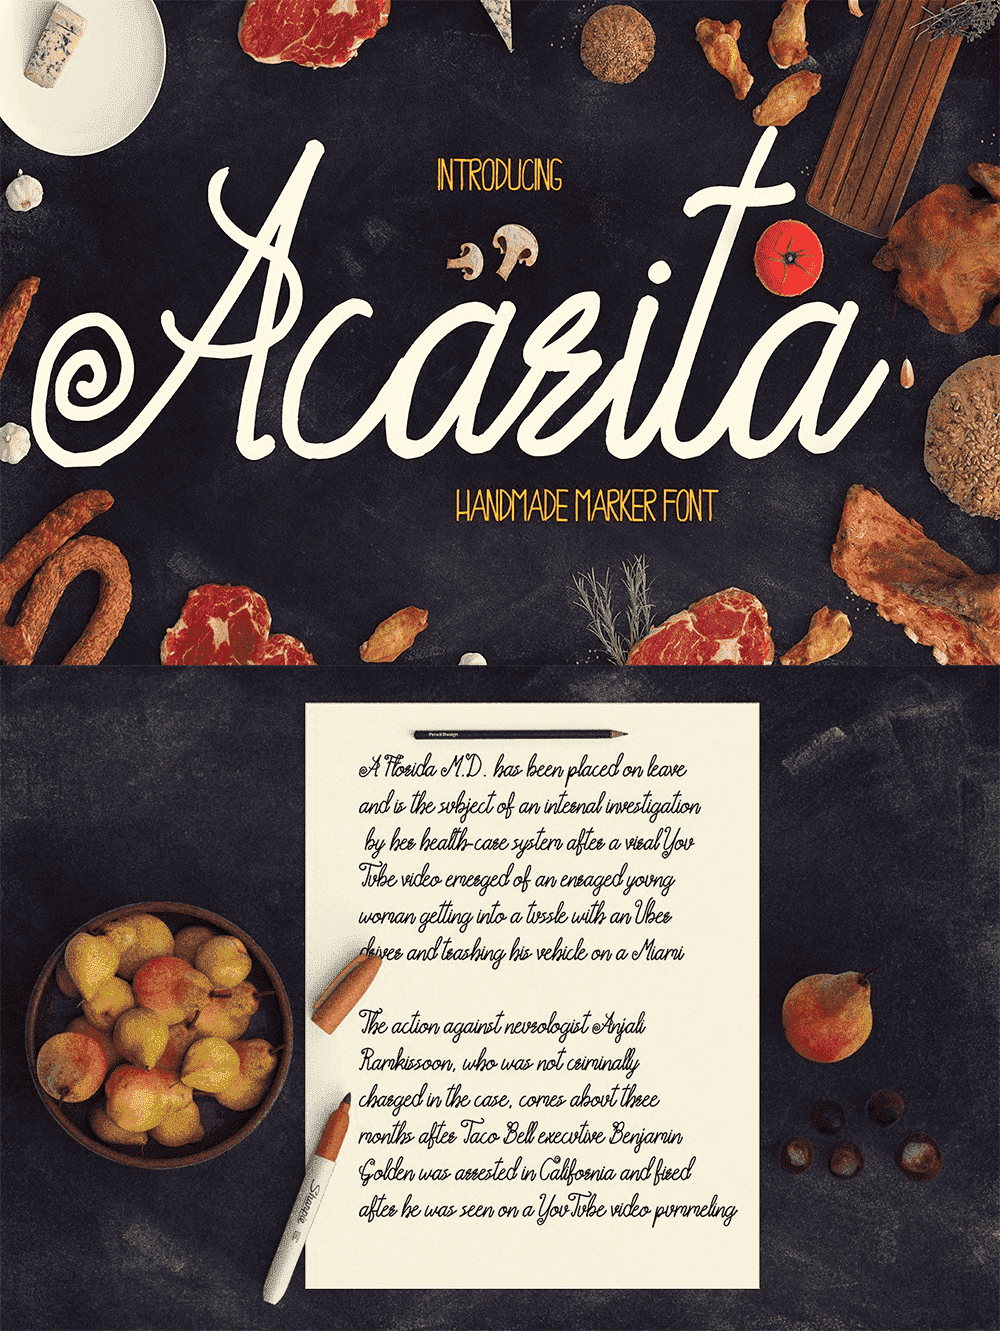 Acarita - Handmade Marker Font, image for pinterest 1000x1331.